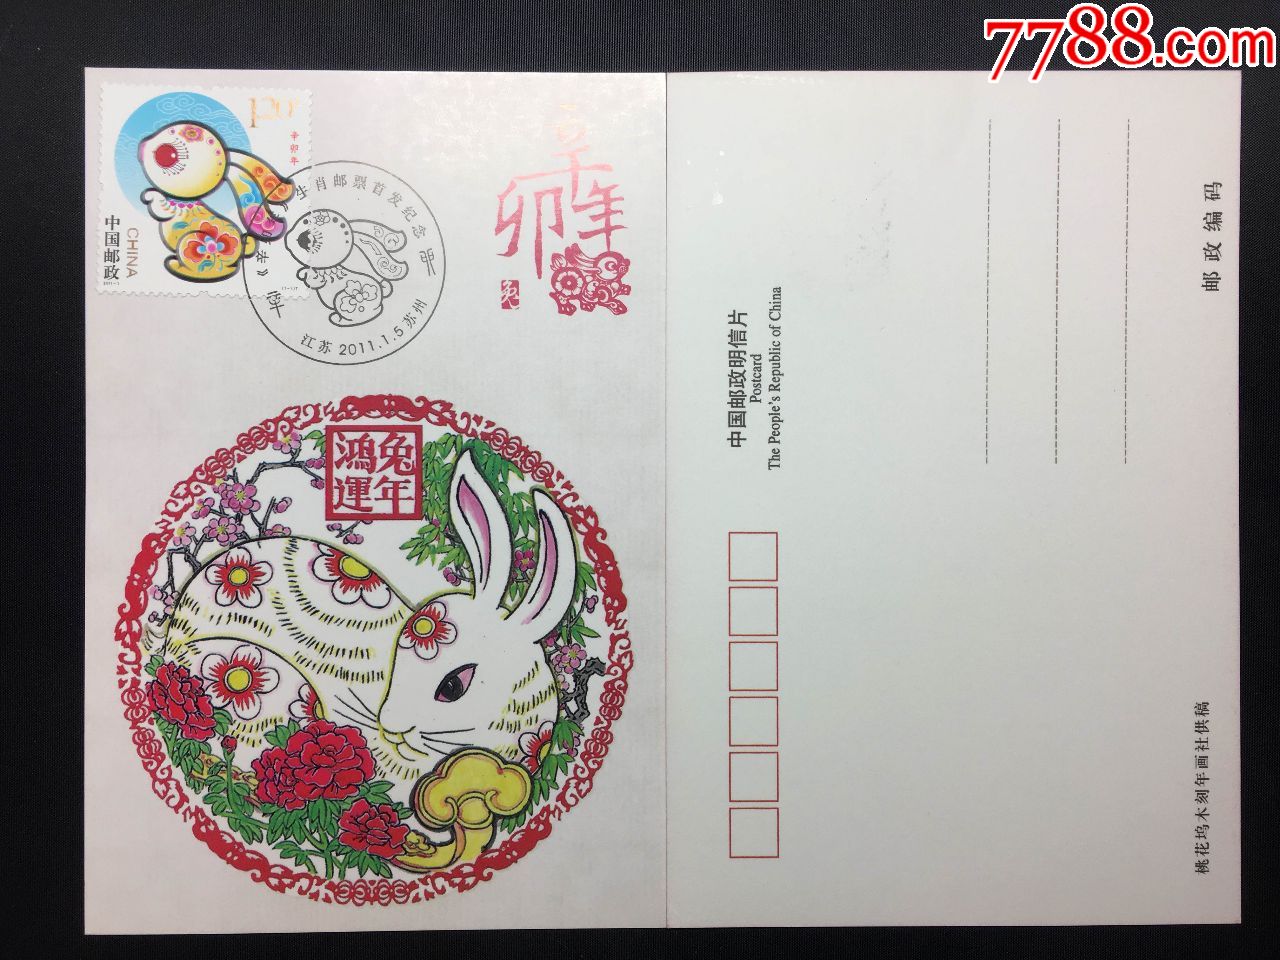 20111辛卯年兔邮票桃花坞木刻年画极限片盖苏州首发纪念戳